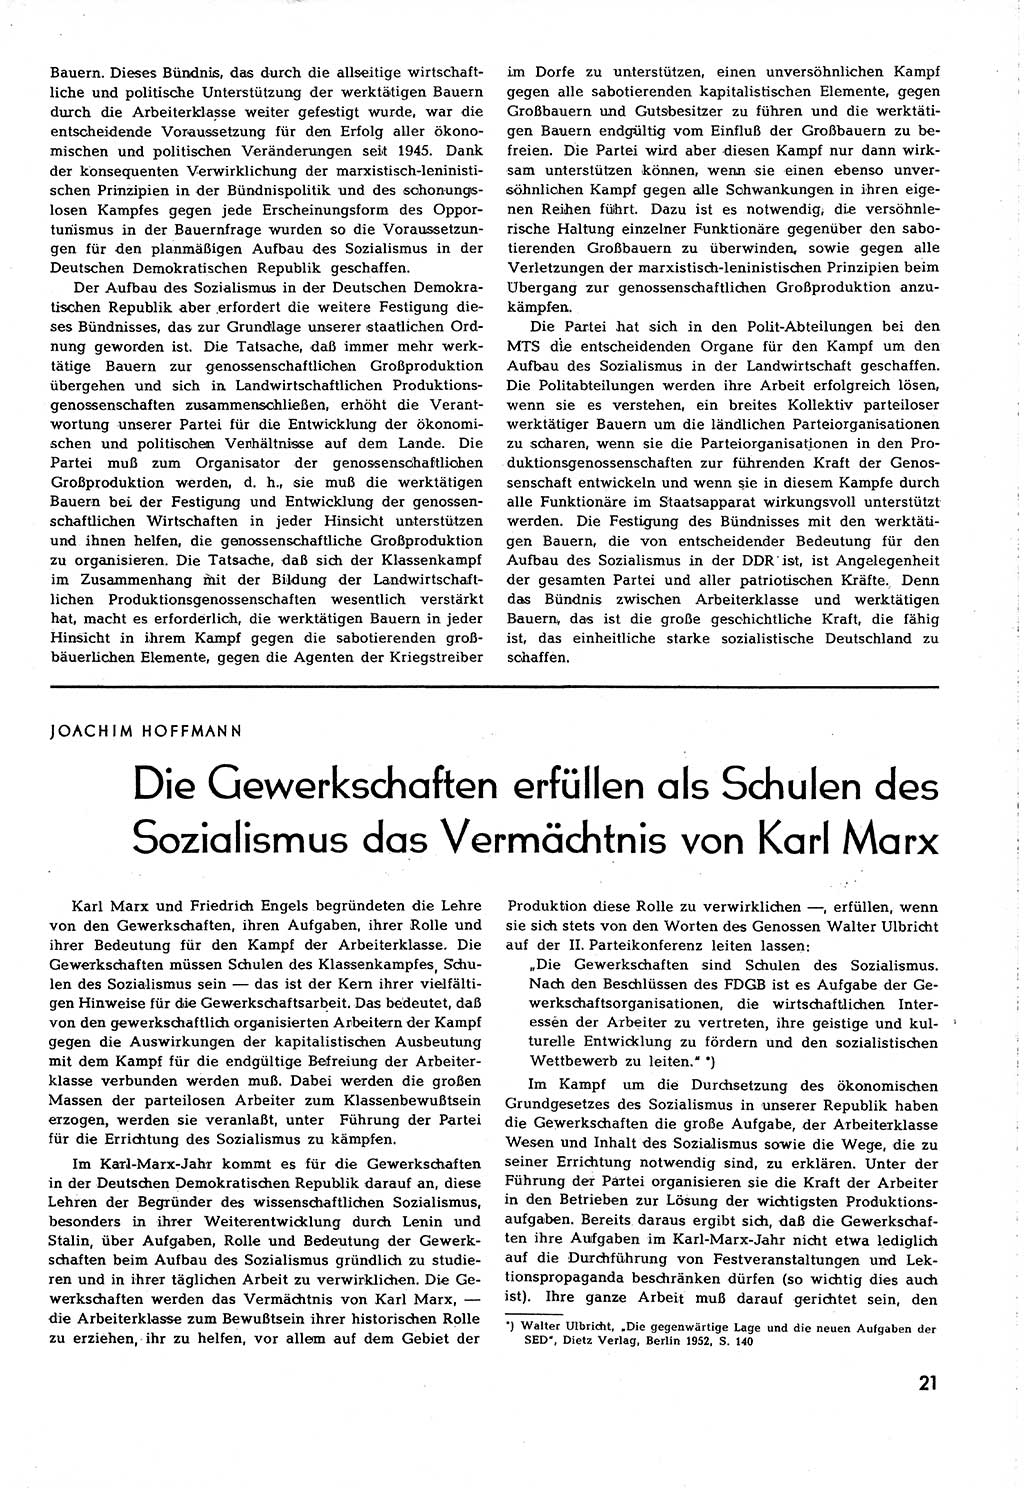 Neuer Weg (NW), Organ des Zentralkomitees (ZK) [Sozialistische Einheitspartei Deutschlands (SED)] für alle Parteiarbeiter, 8. Jahrgang [Deutsche Demokratische Republik (DDR)] 1953, Heft 5/21 (NW ZK SED DDR 1953, H. 5/21)